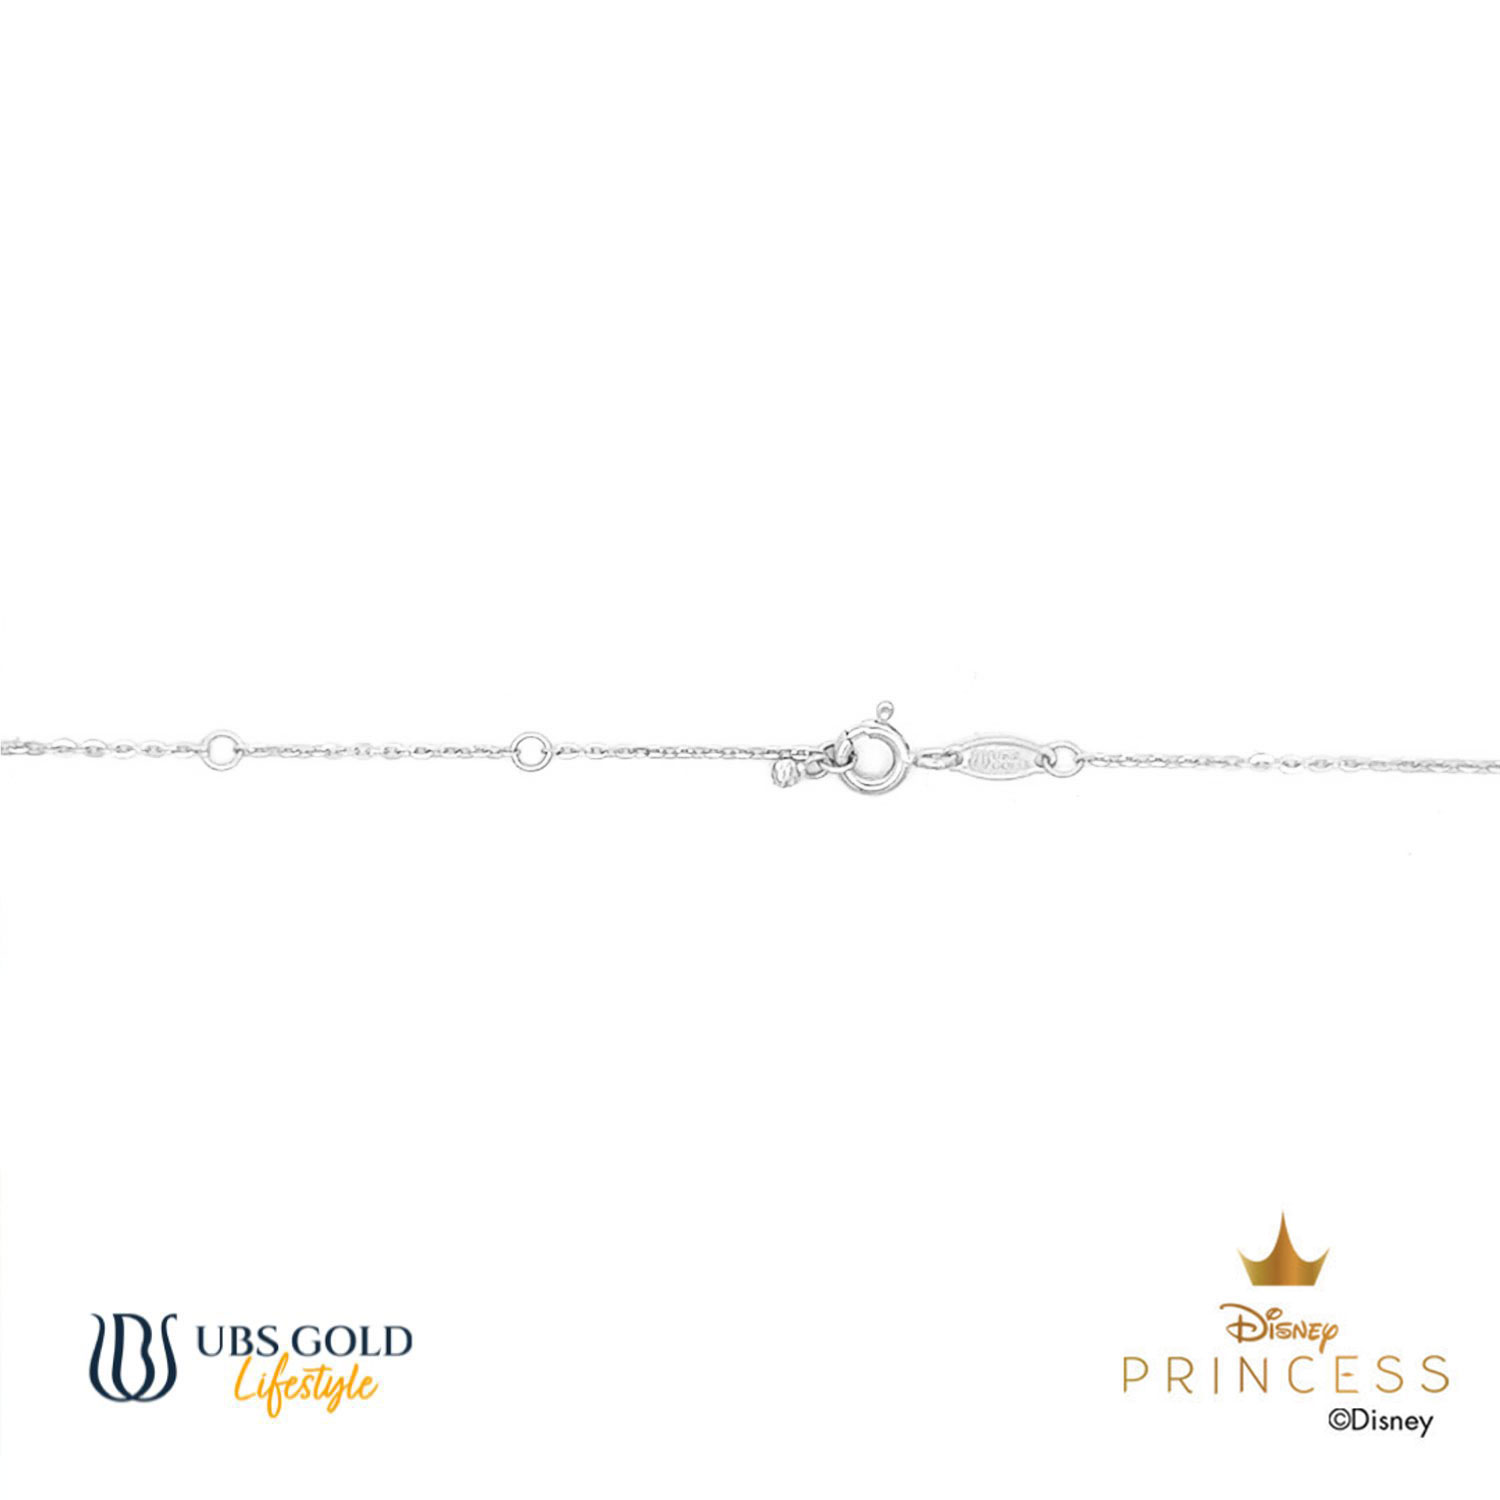 UBS Gold Kalung Emas Disney Princess Ariel - Kky0451 - 17K